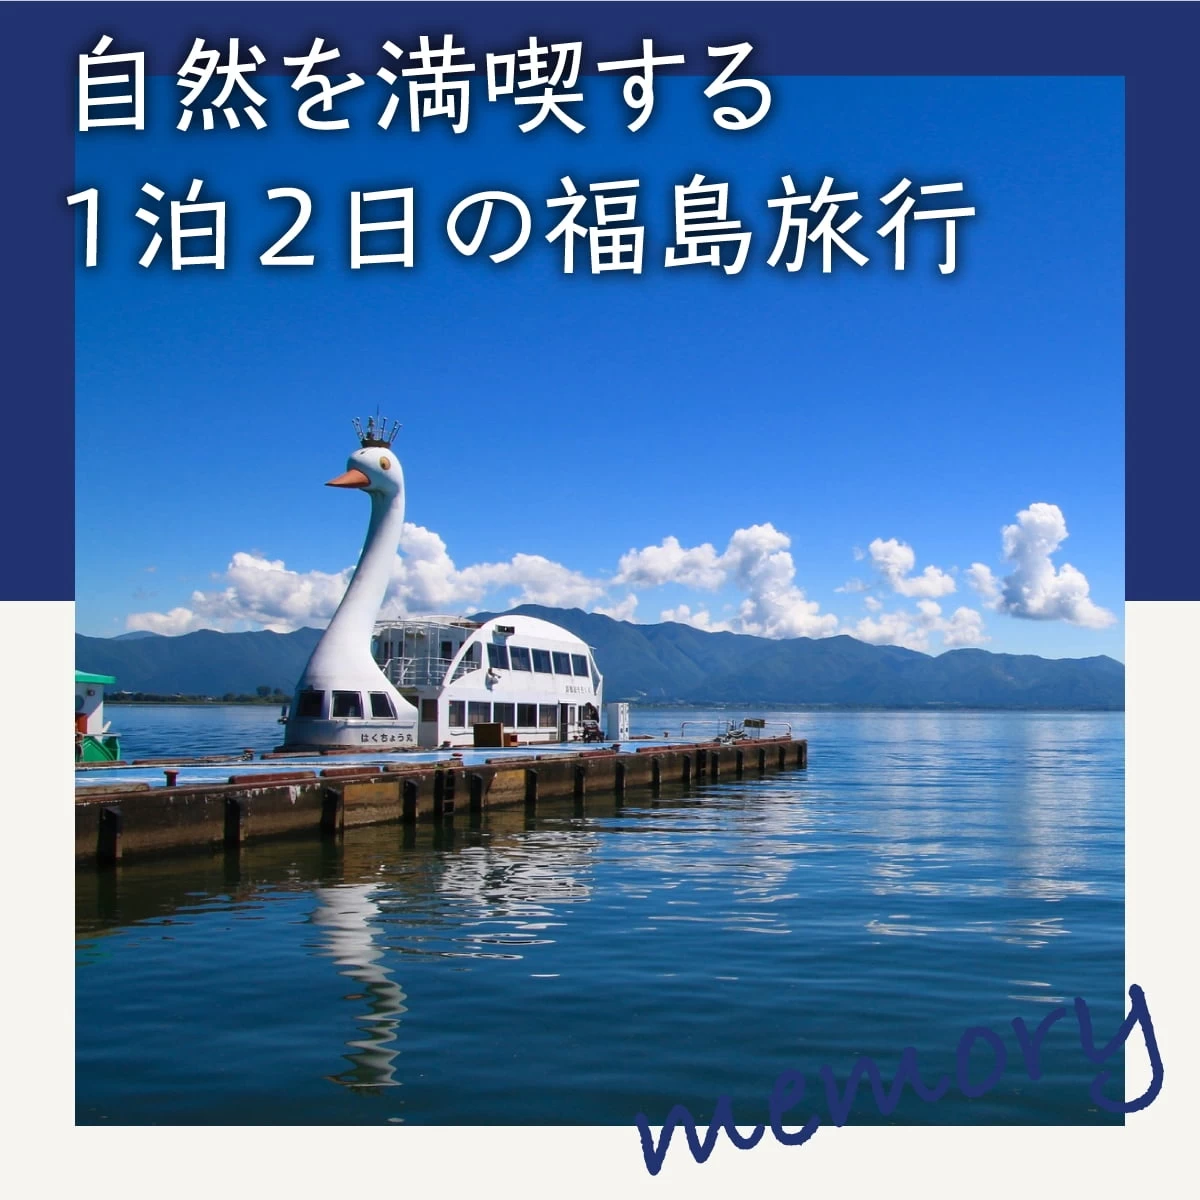 1泊2日の福島観光モデルコース。猪苗代湖や会津若松城も巡る旅